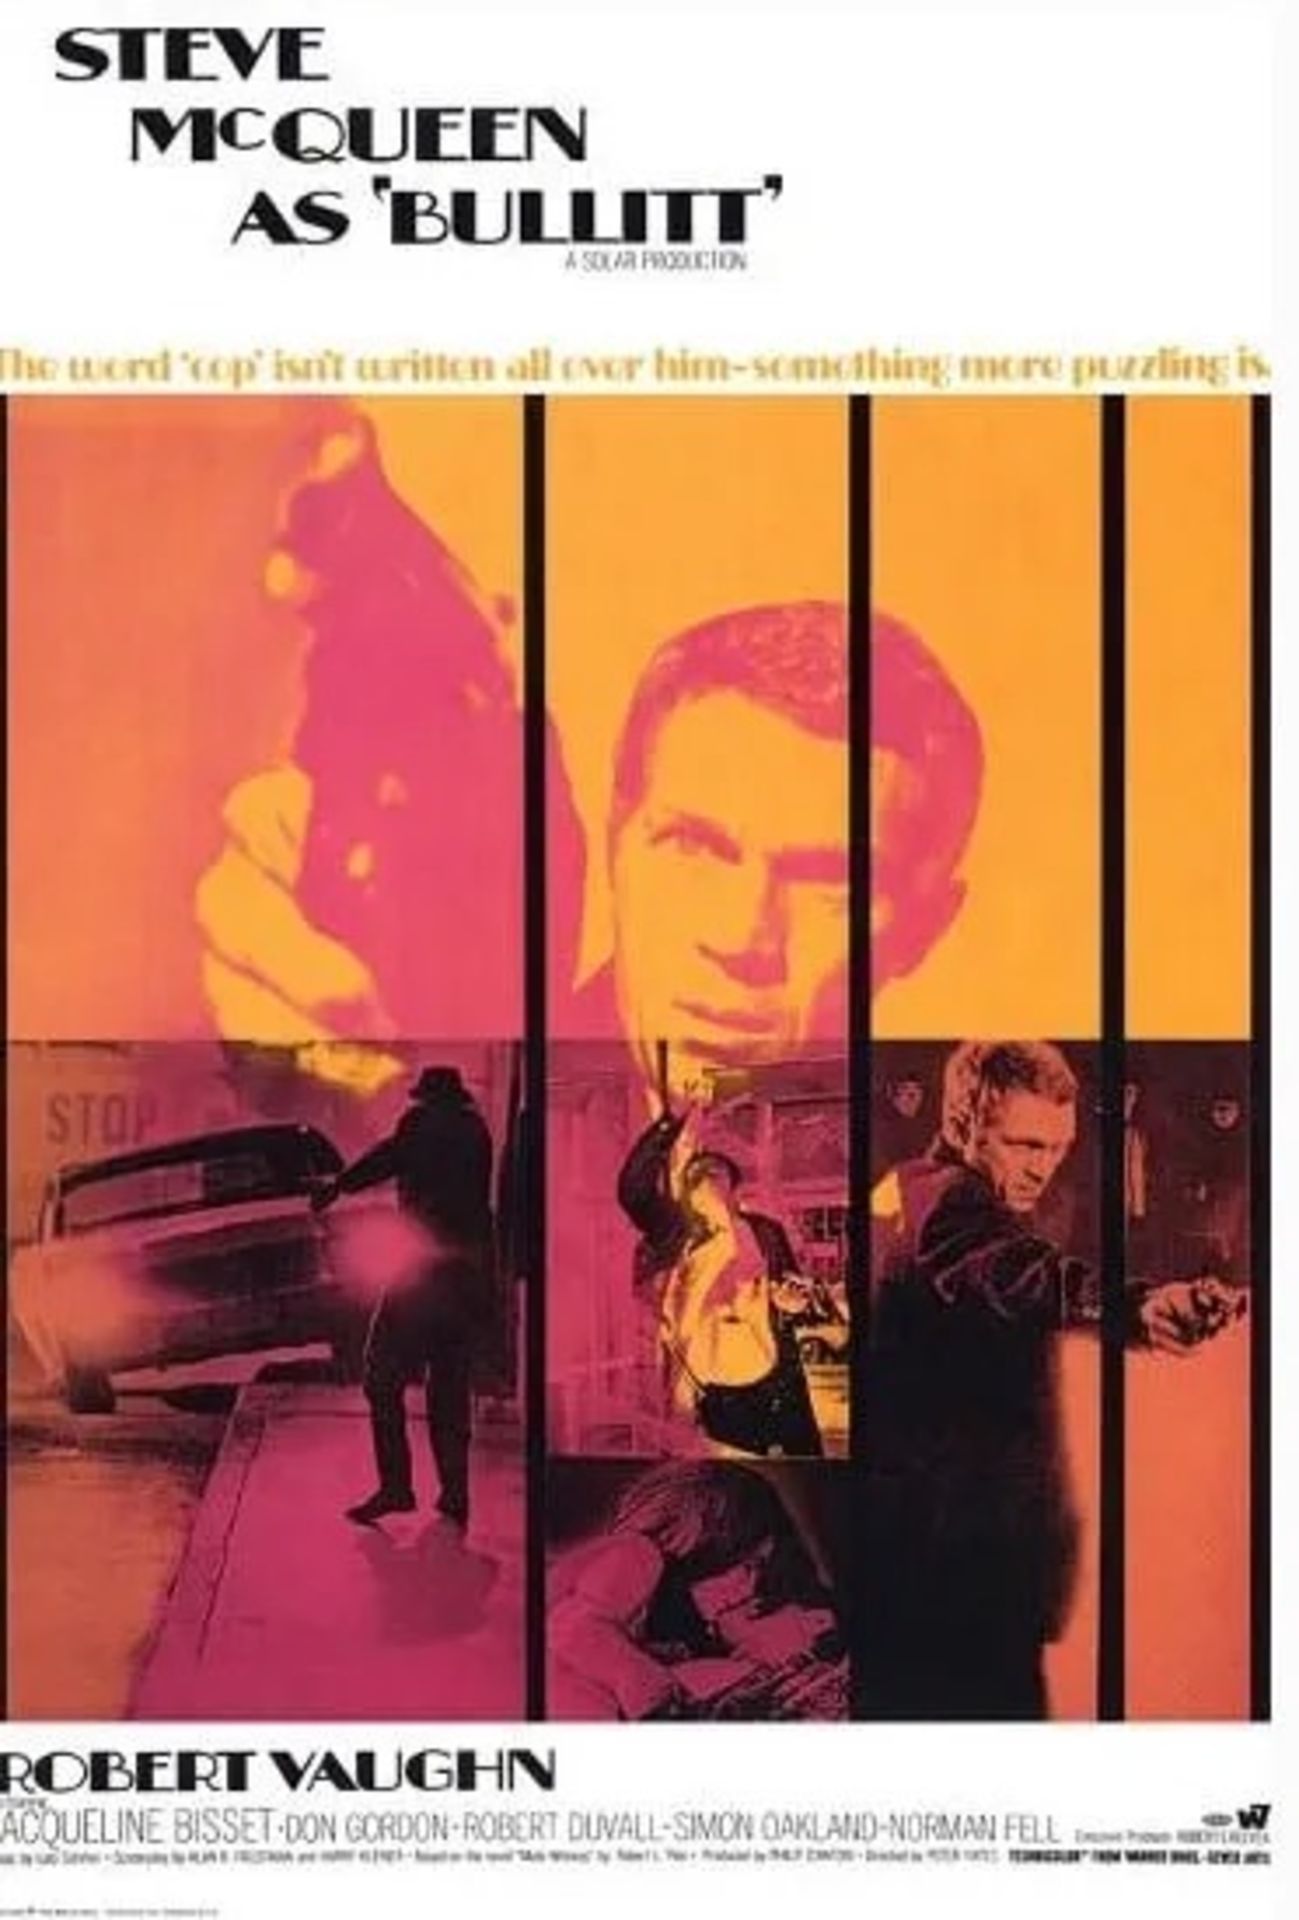 Steve McQueen "Bullitt, 1968" Movie Poster